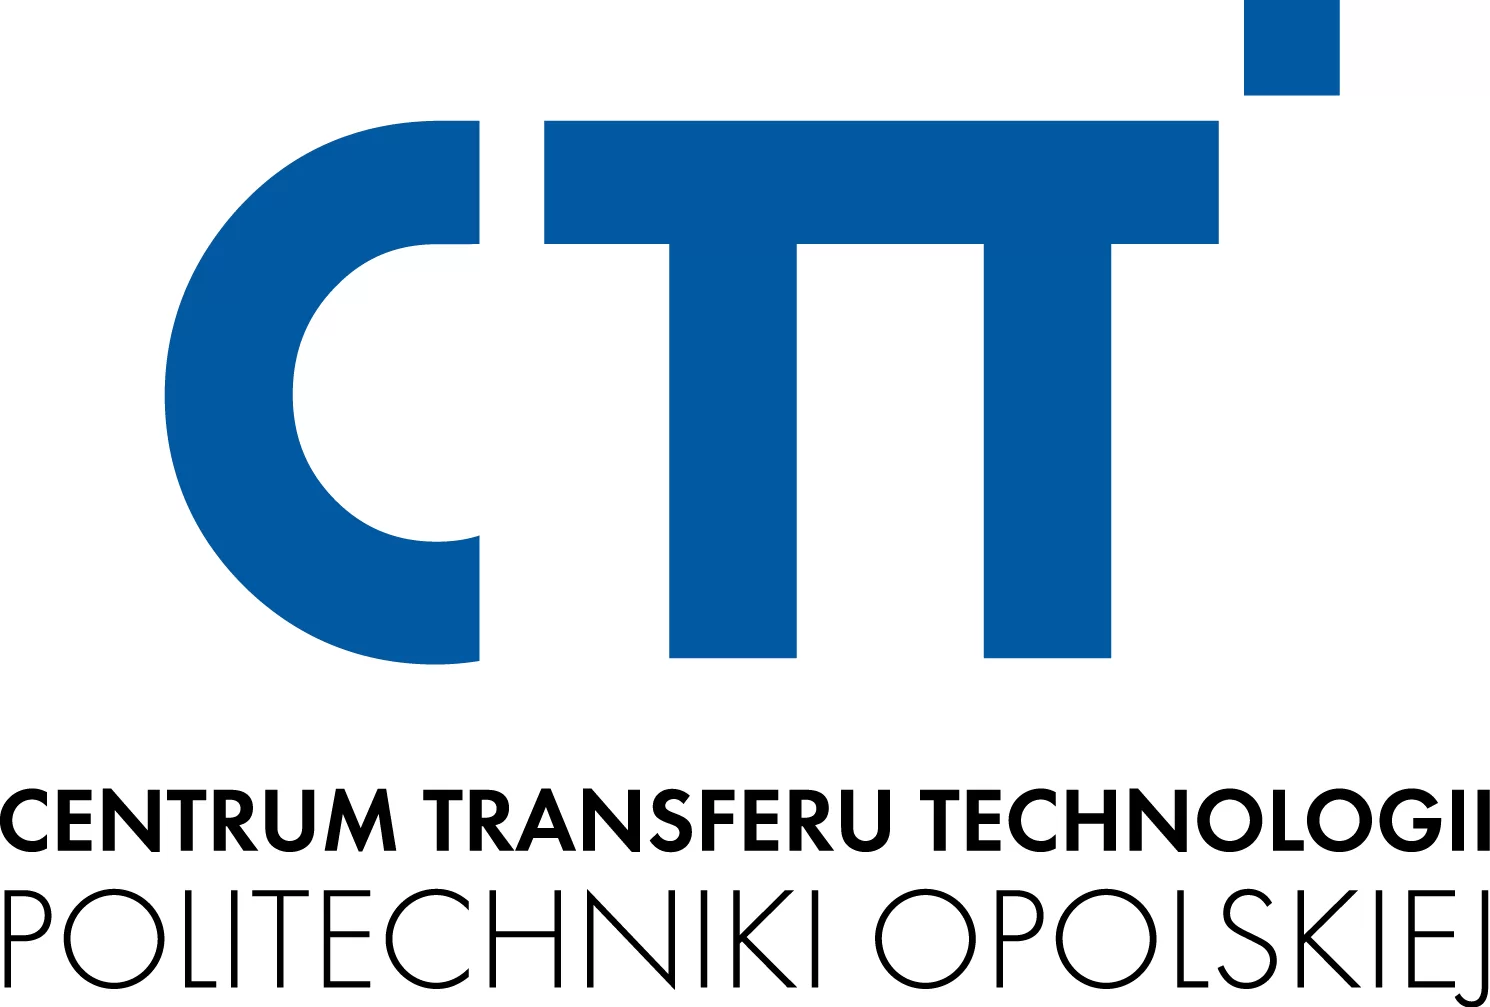 Centrum transferu technologii politechniki opolskiej